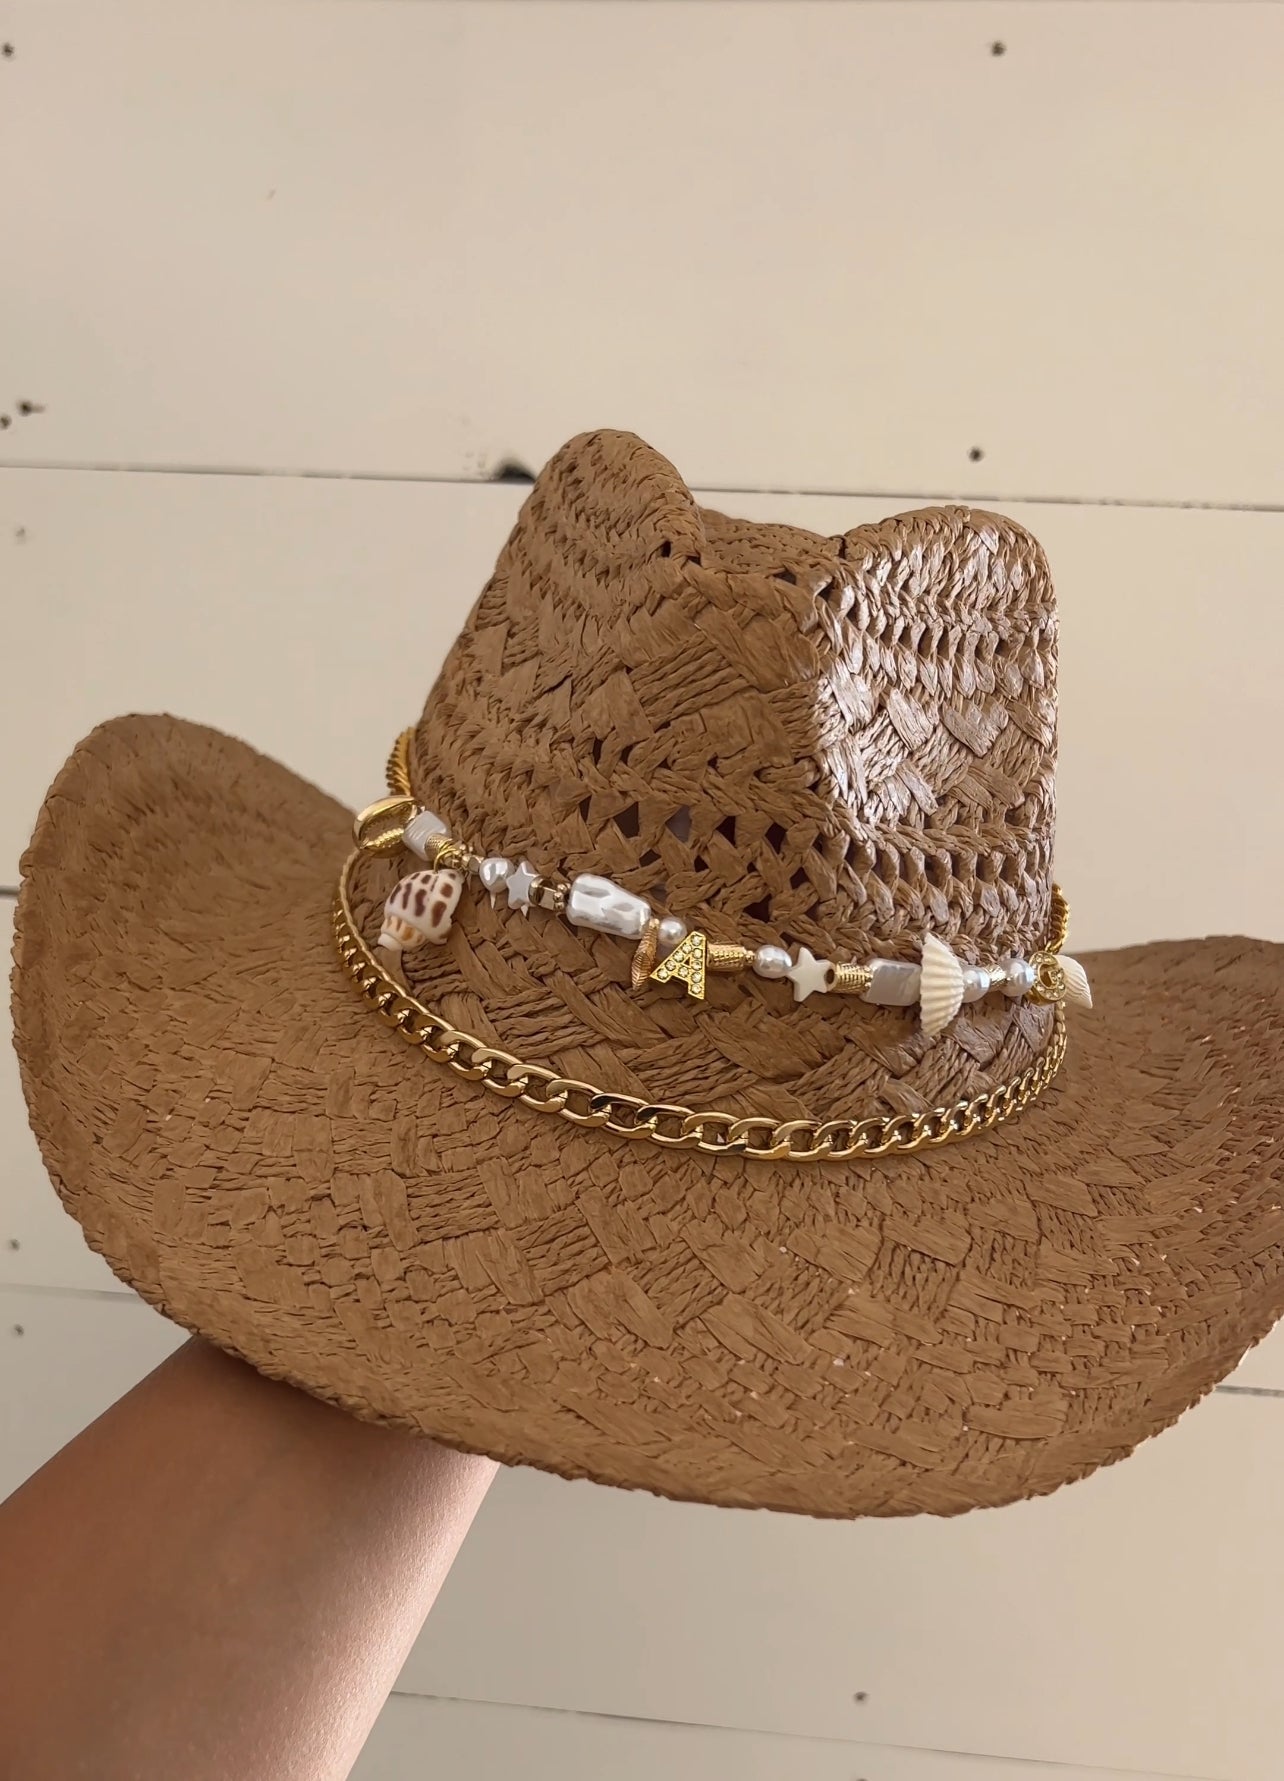 Coastal Cowgirl Hat Workshop - May 9th